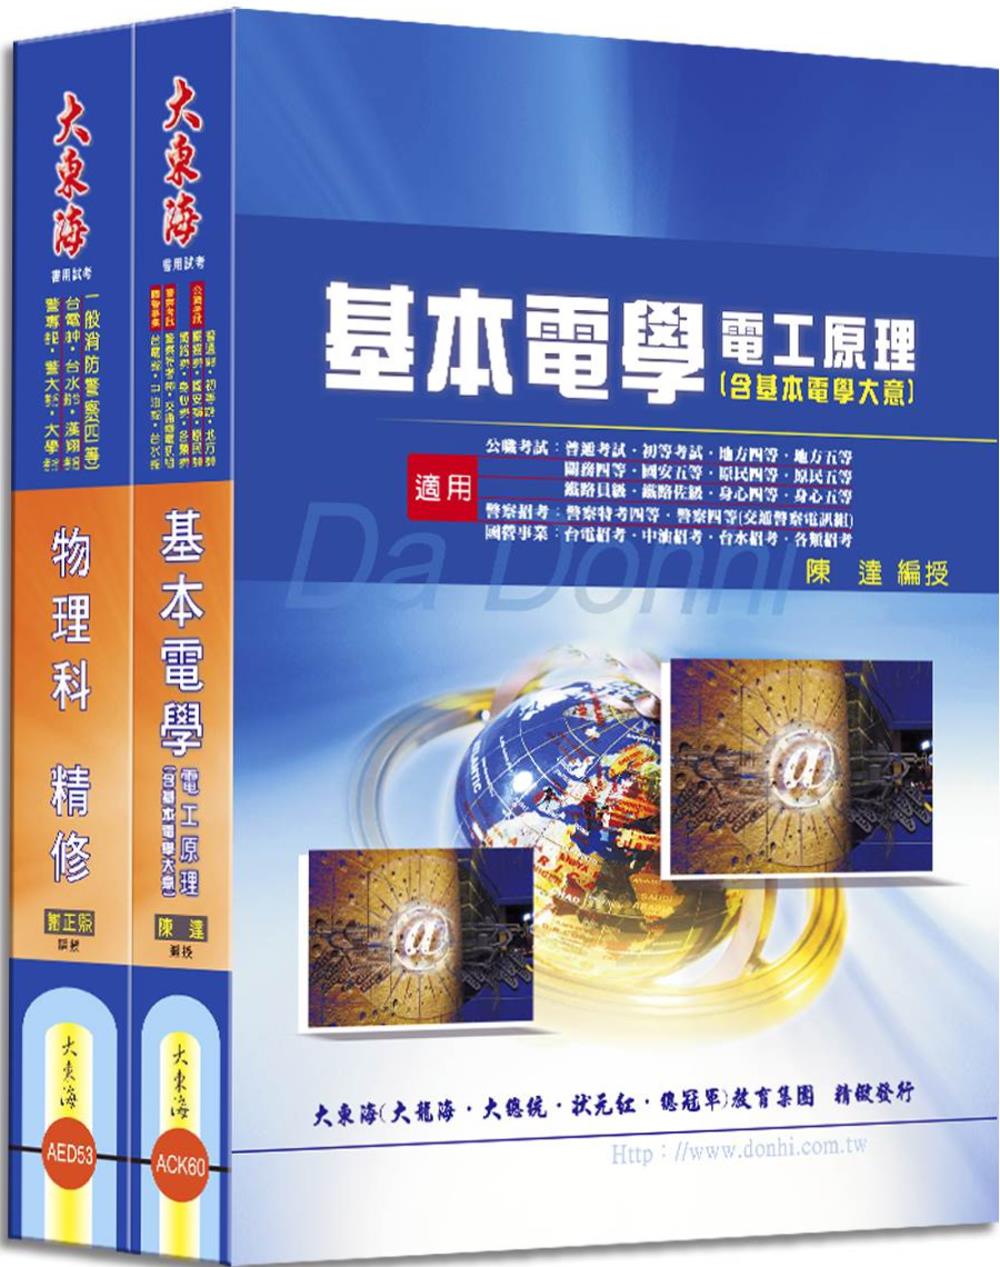 台電雇用人員(配電線路維護)專業科目套書(增訂版)